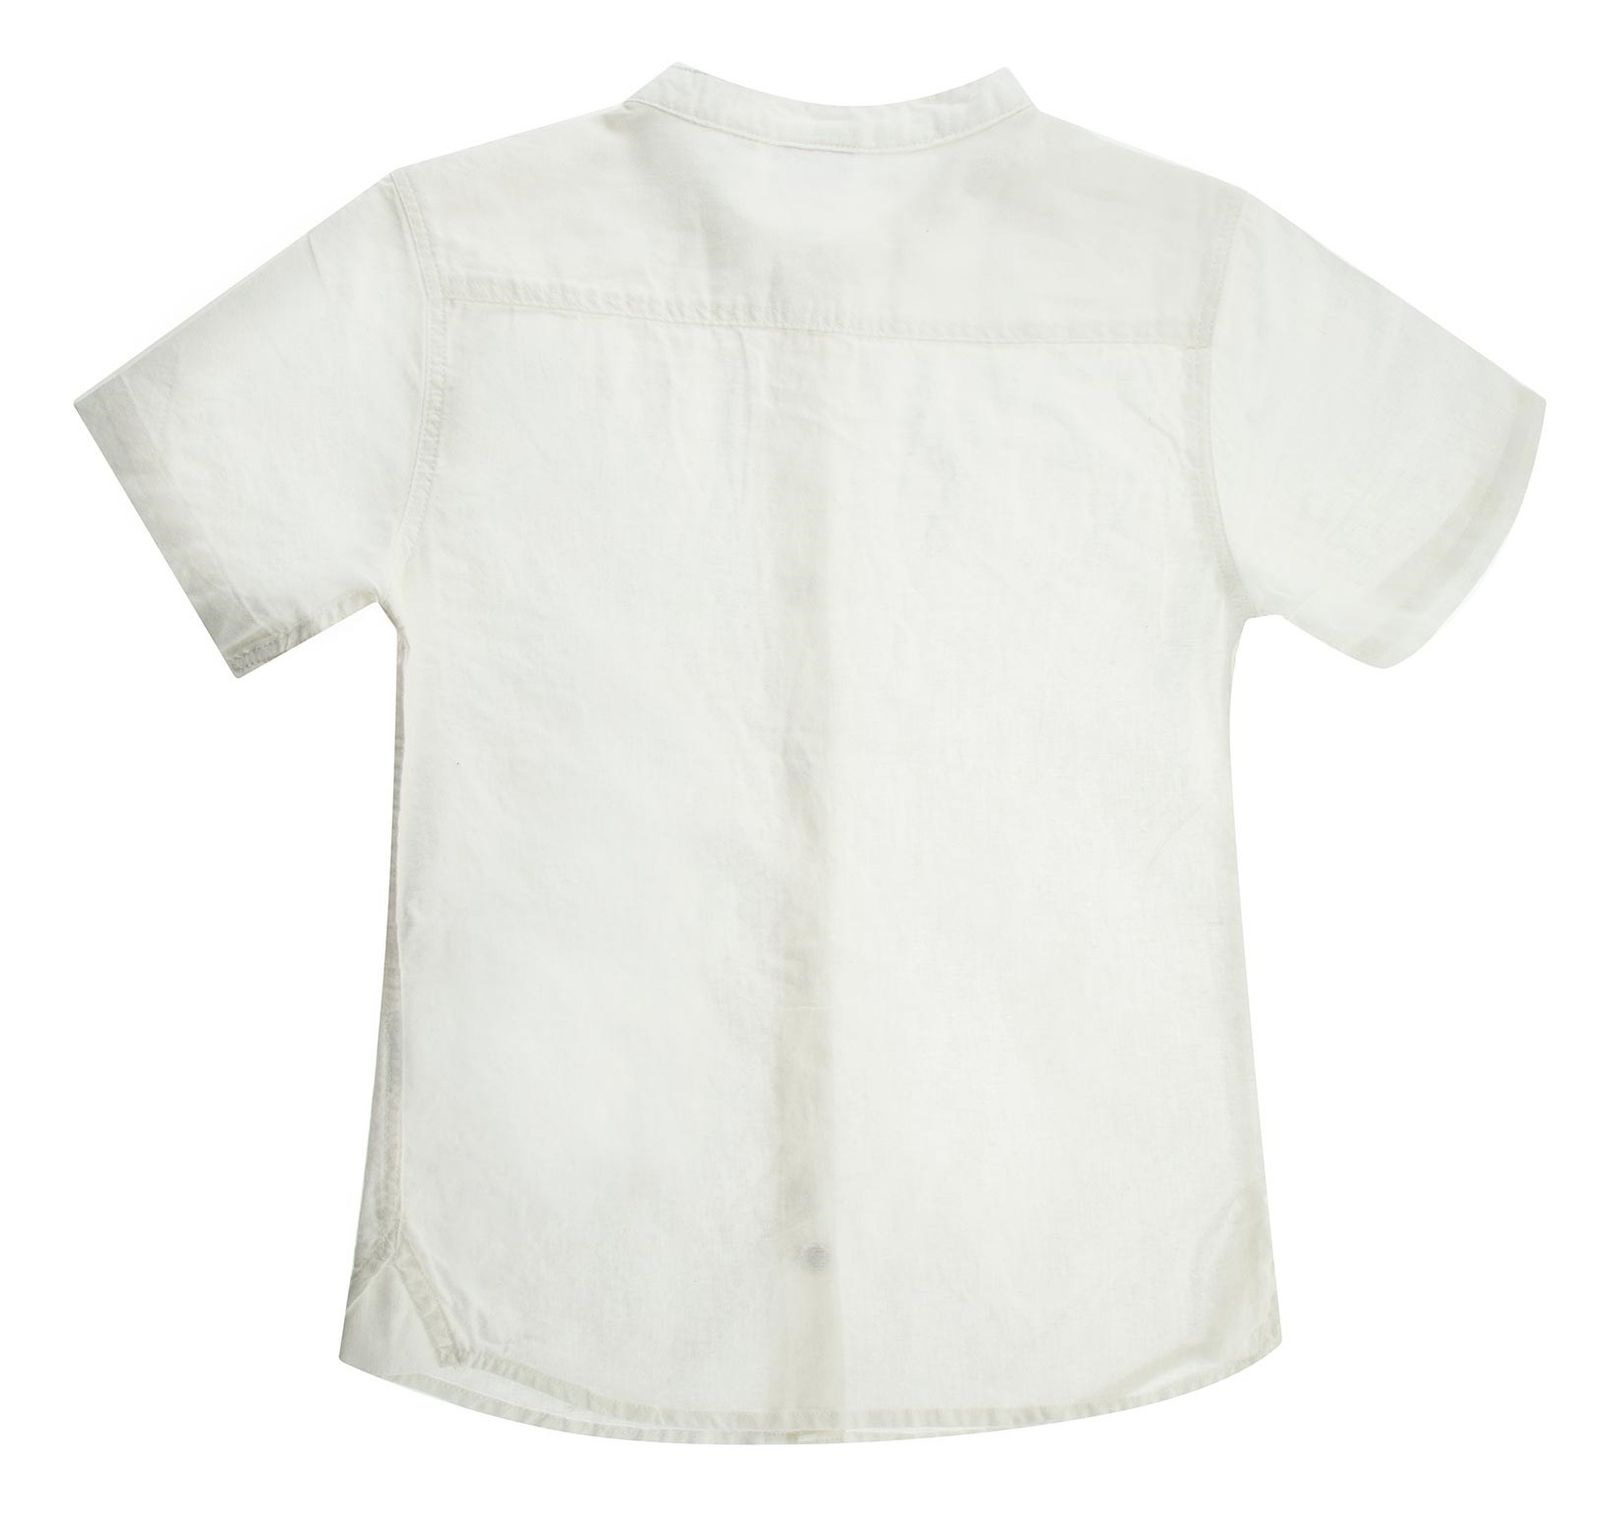 پیراهن آستین کوتاه پسرانه - بلوکیدز - سفید - 3